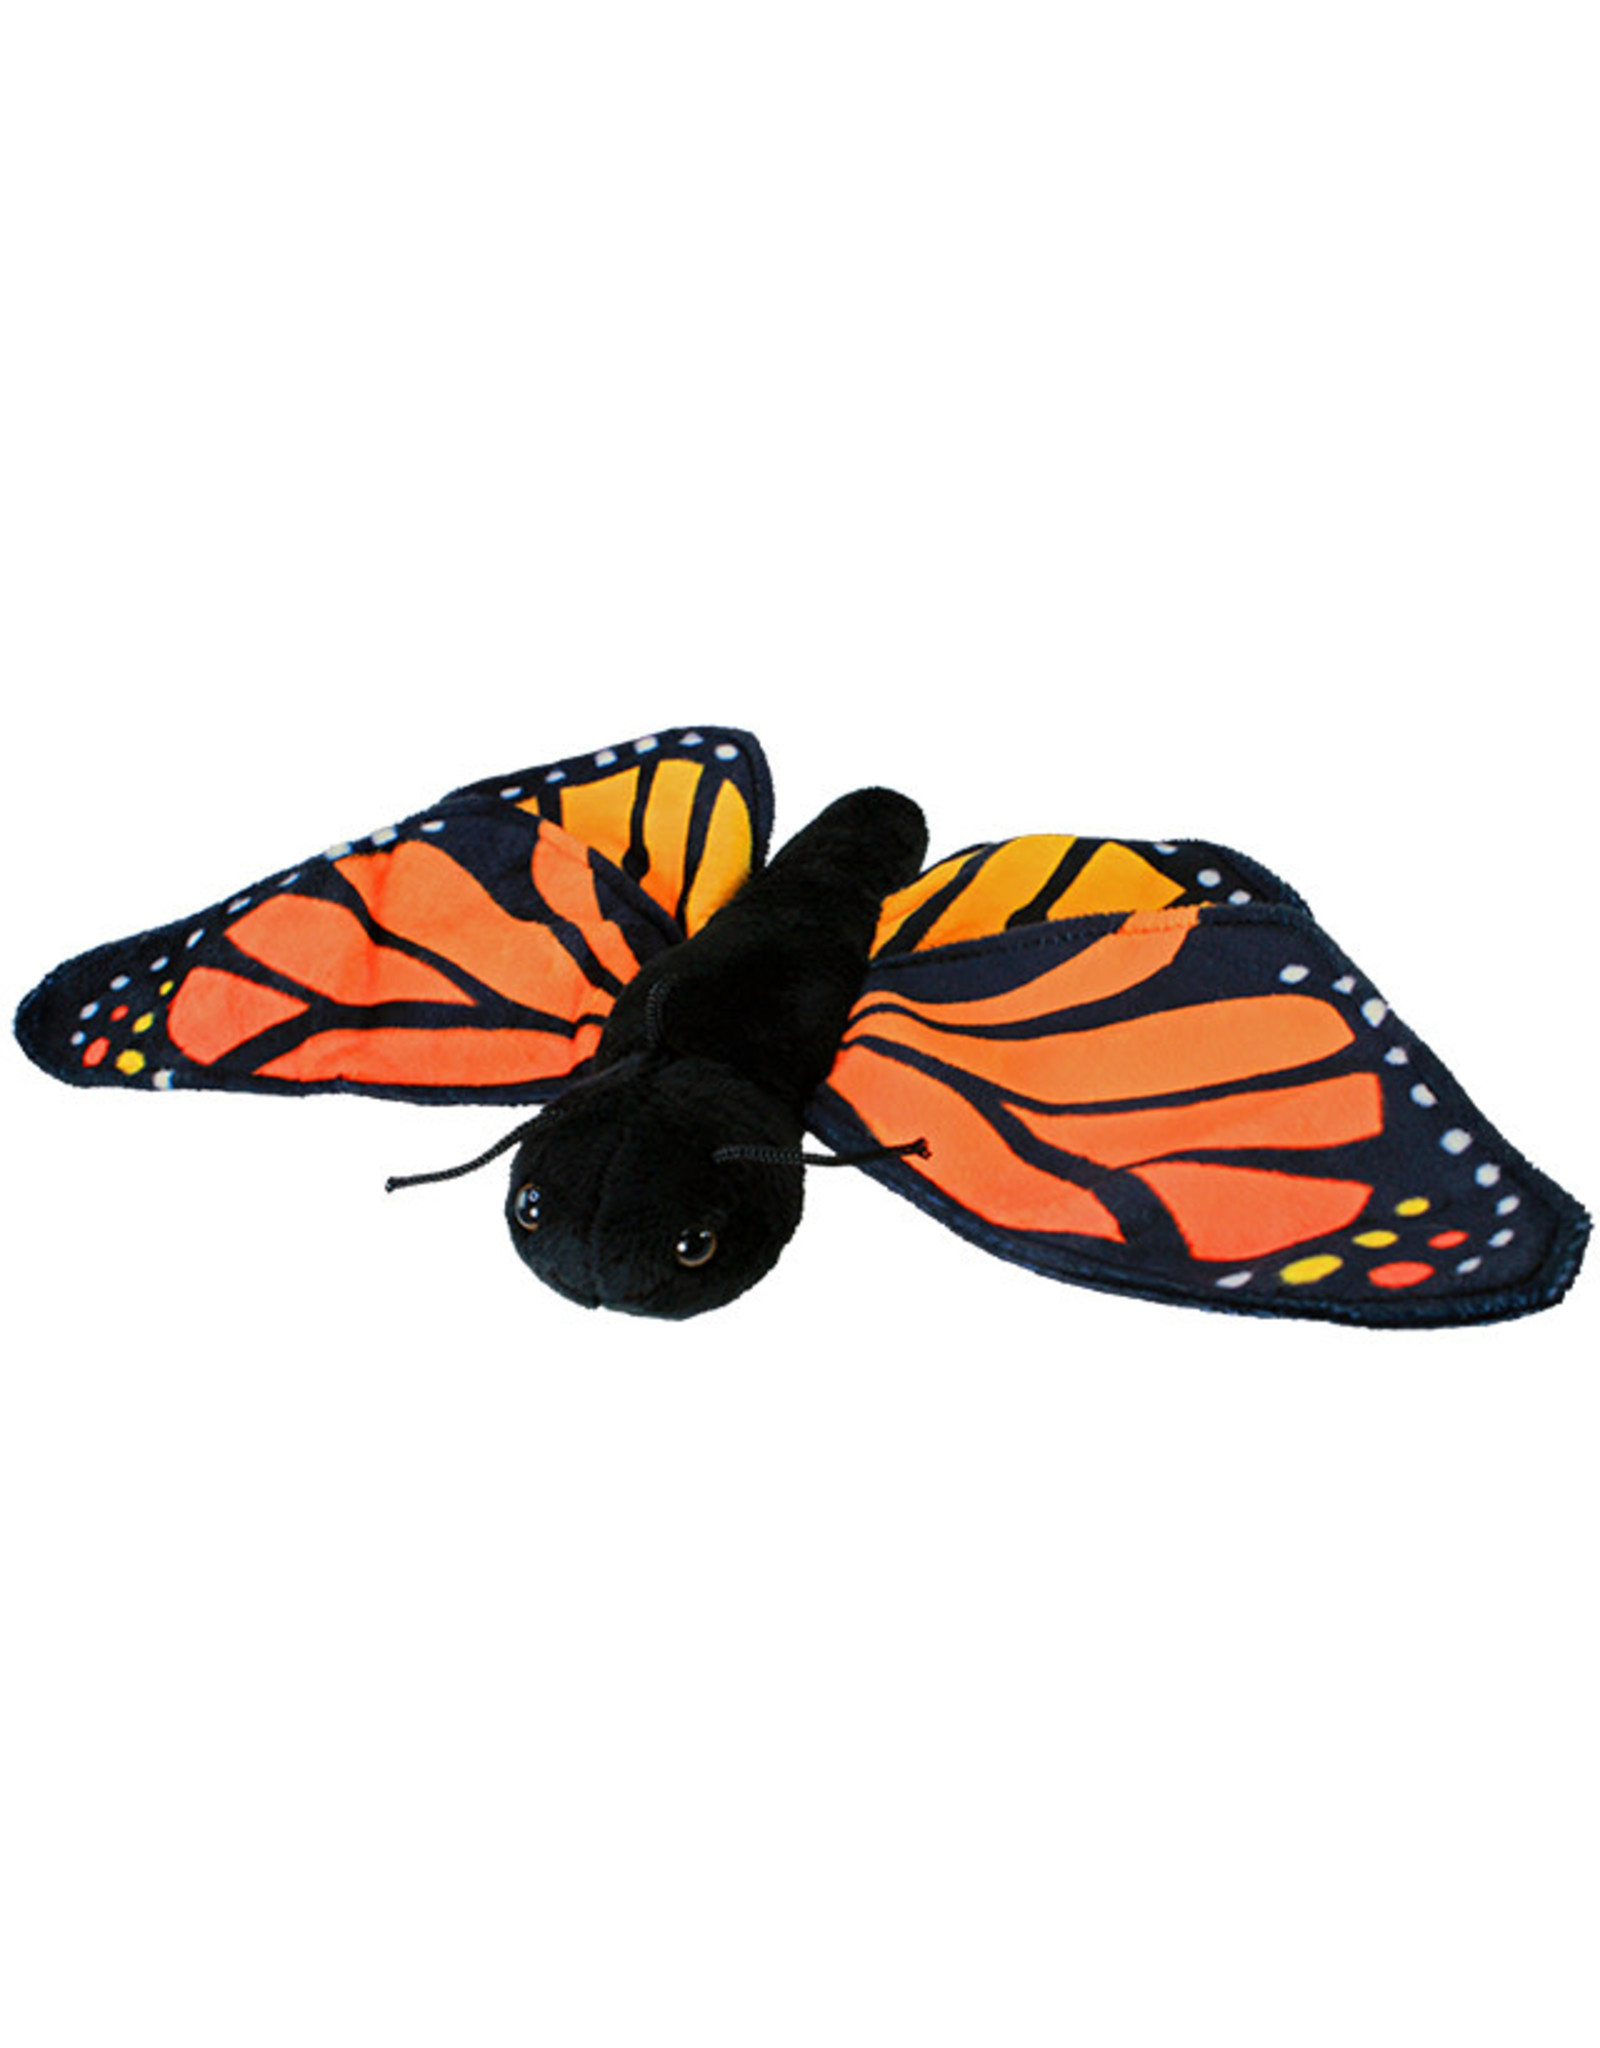 Wishpets 15" Orange Monarch Butterfly